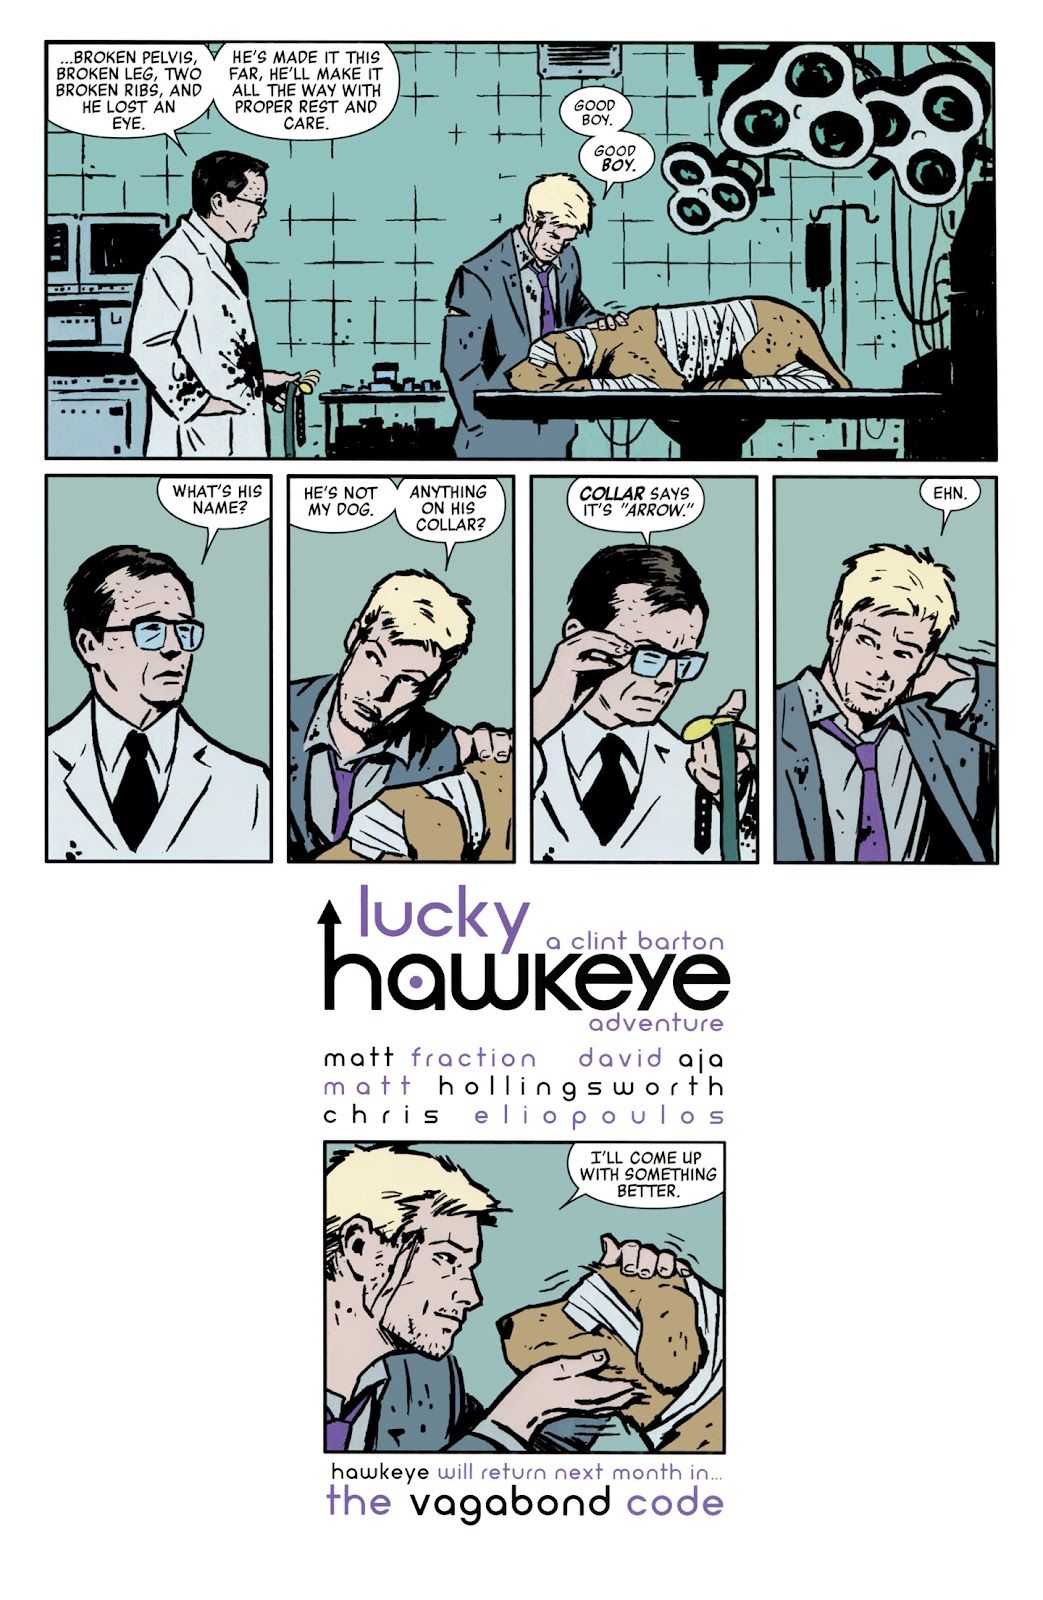 Hawkeye gets a new pet dog